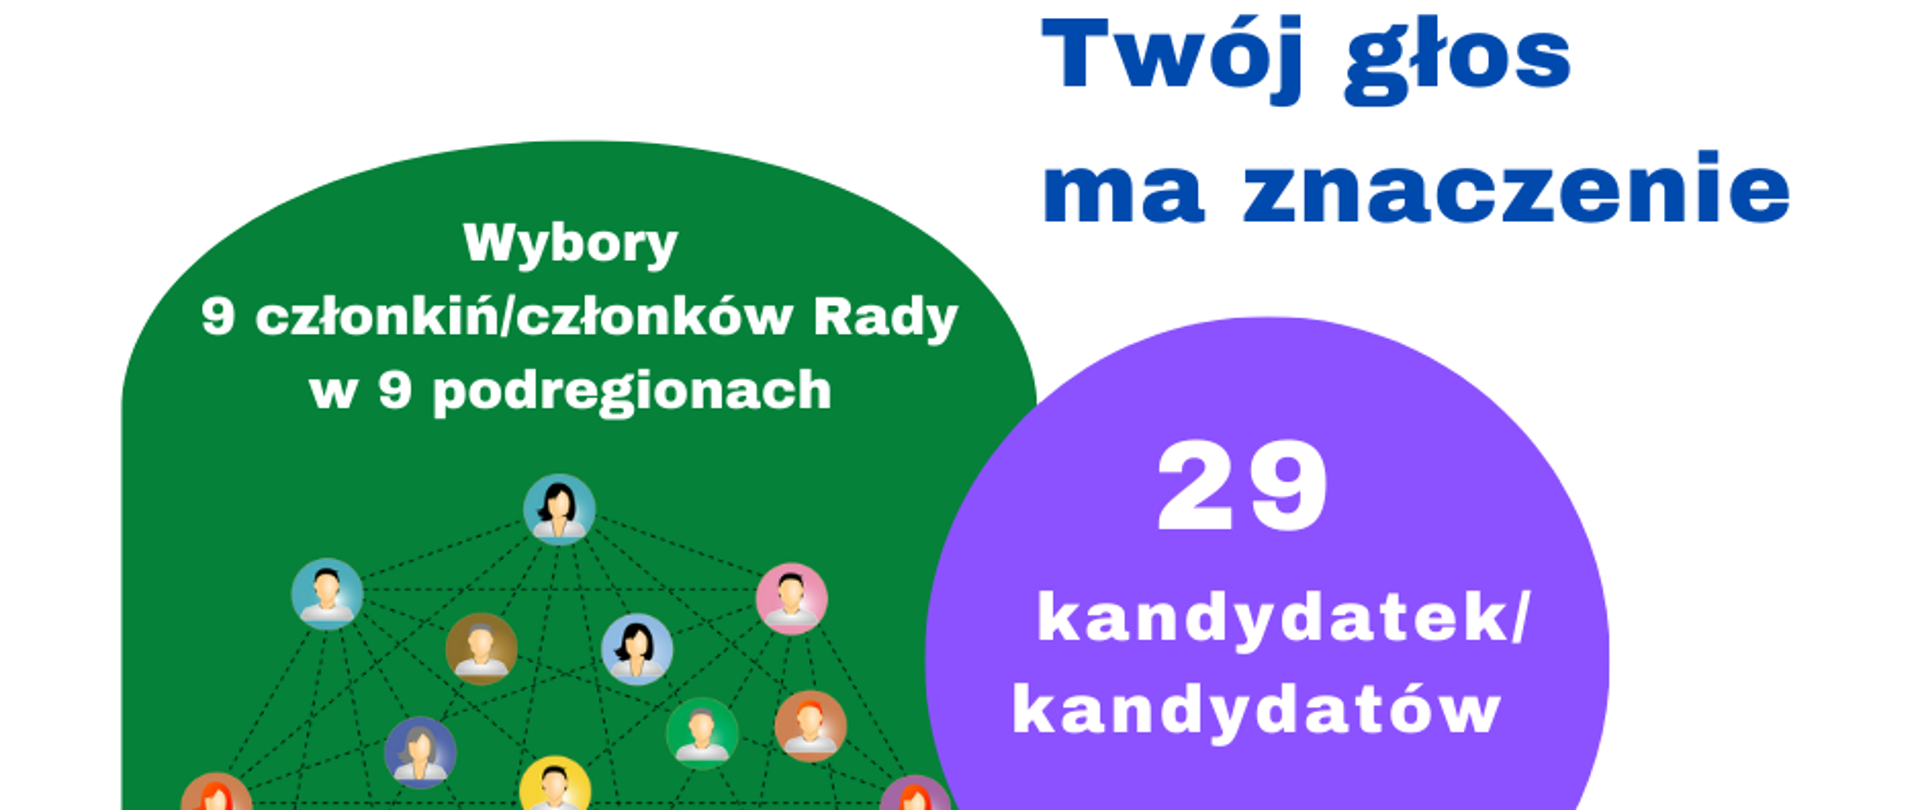 po lewej na zielonym tle napis: wybory9 członkiń/członków Rady w 9 podregionach, po prawej na białym tle napis: twój głos ma znaczenie pod spodem w fioletowym okręgu napis: 29 kandydatek/kandydatów, poniżej adres: mrdpp.mazovia.pl i logo rady